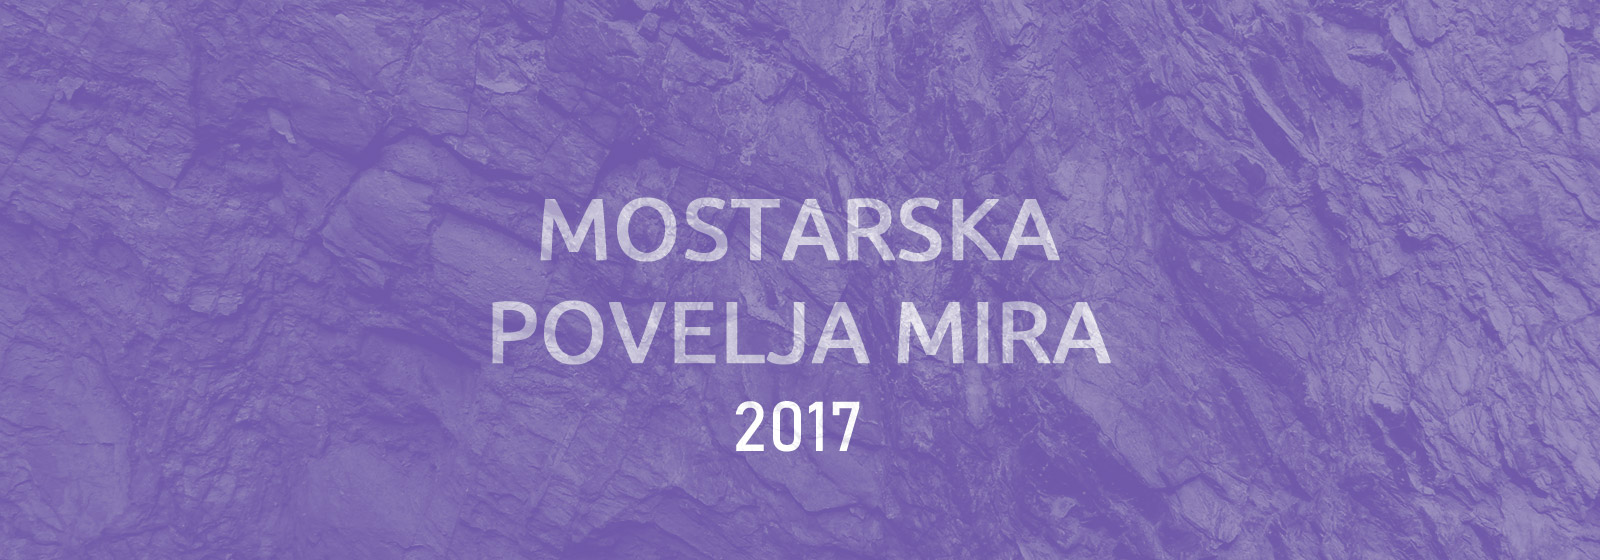 Mostarska povelja mira 2017: Poruke mira, međureligijske i multietničke saradnje